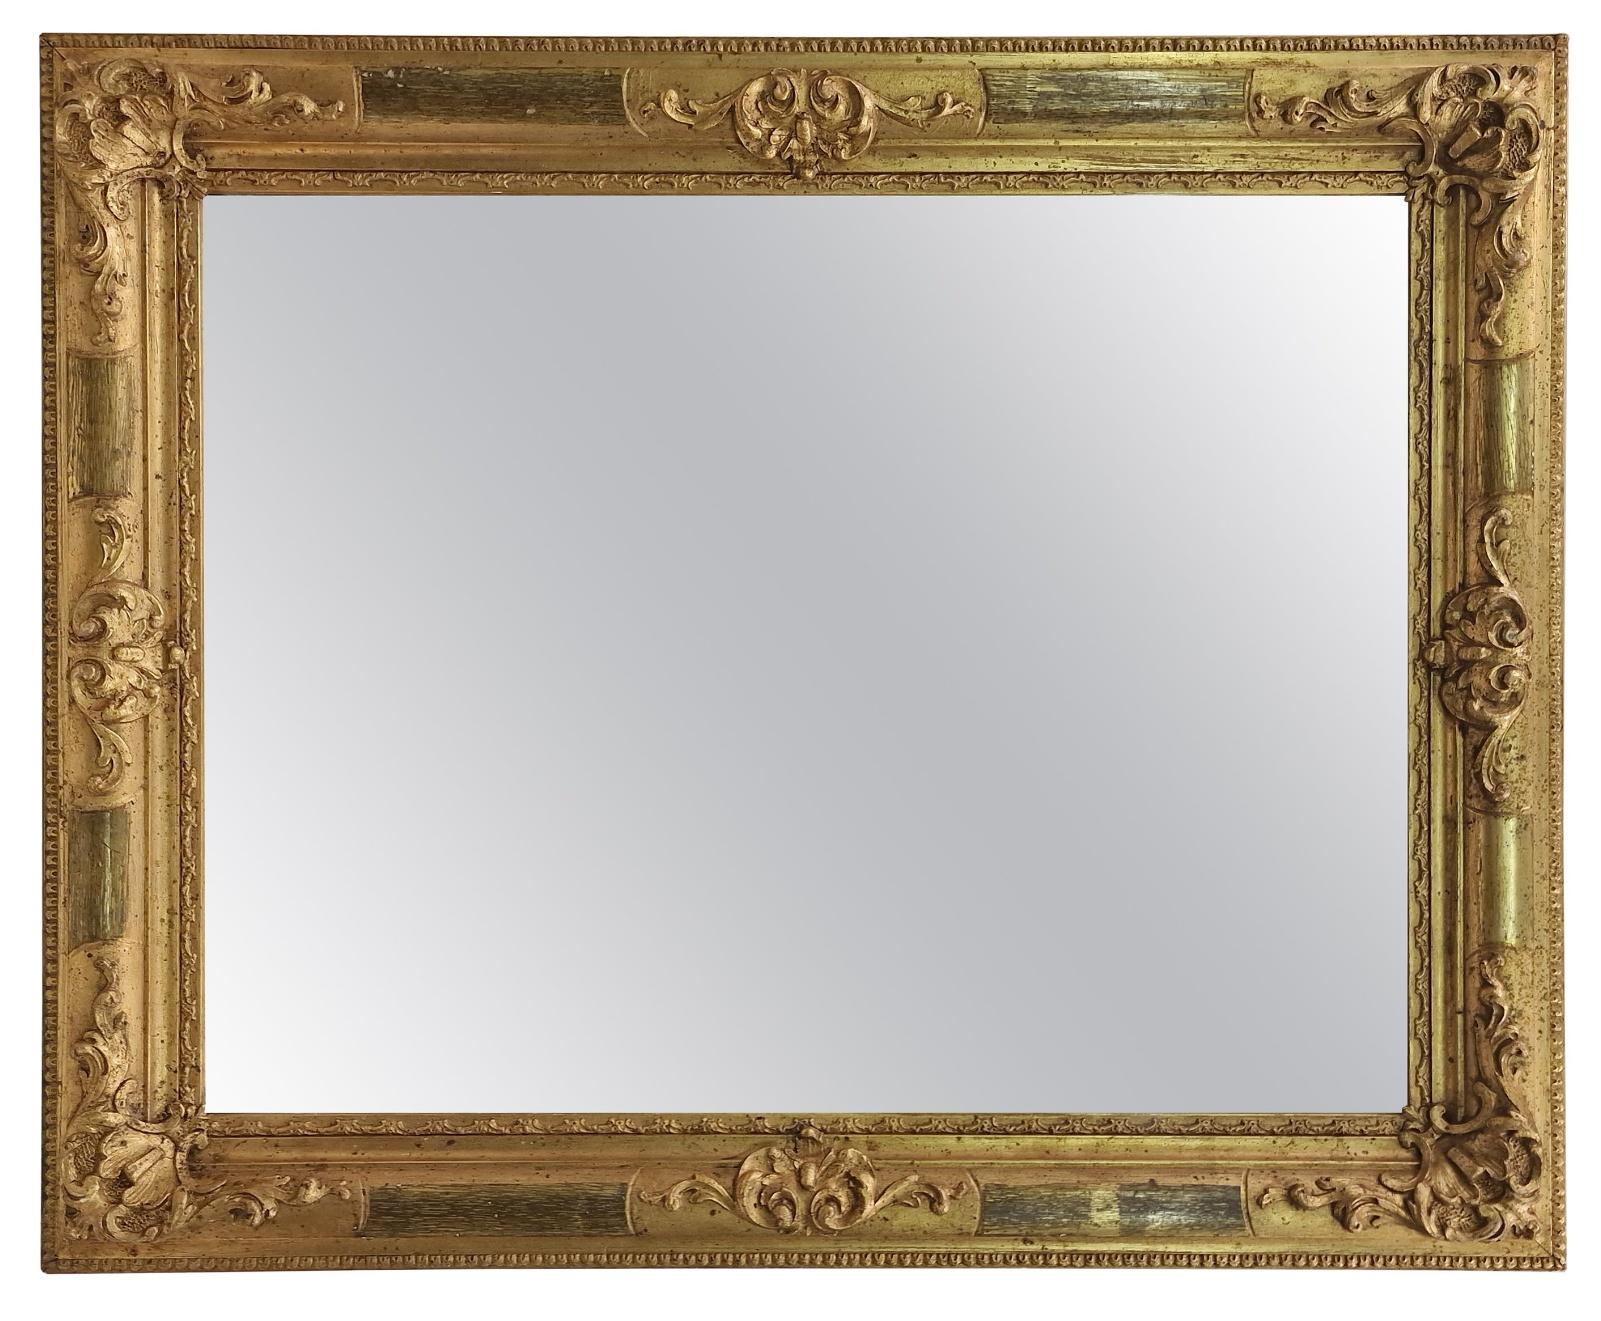 Magnifique miroir mural de la période Biedermeier, vers 1850/60, fabriqué en Autriche, Europe. 
Le miroir est dans un état impressionnant, seule la plaque du miroir a été renouvelée pour permettre son utilisation. 
Ce miroir doré, vieux d'environ